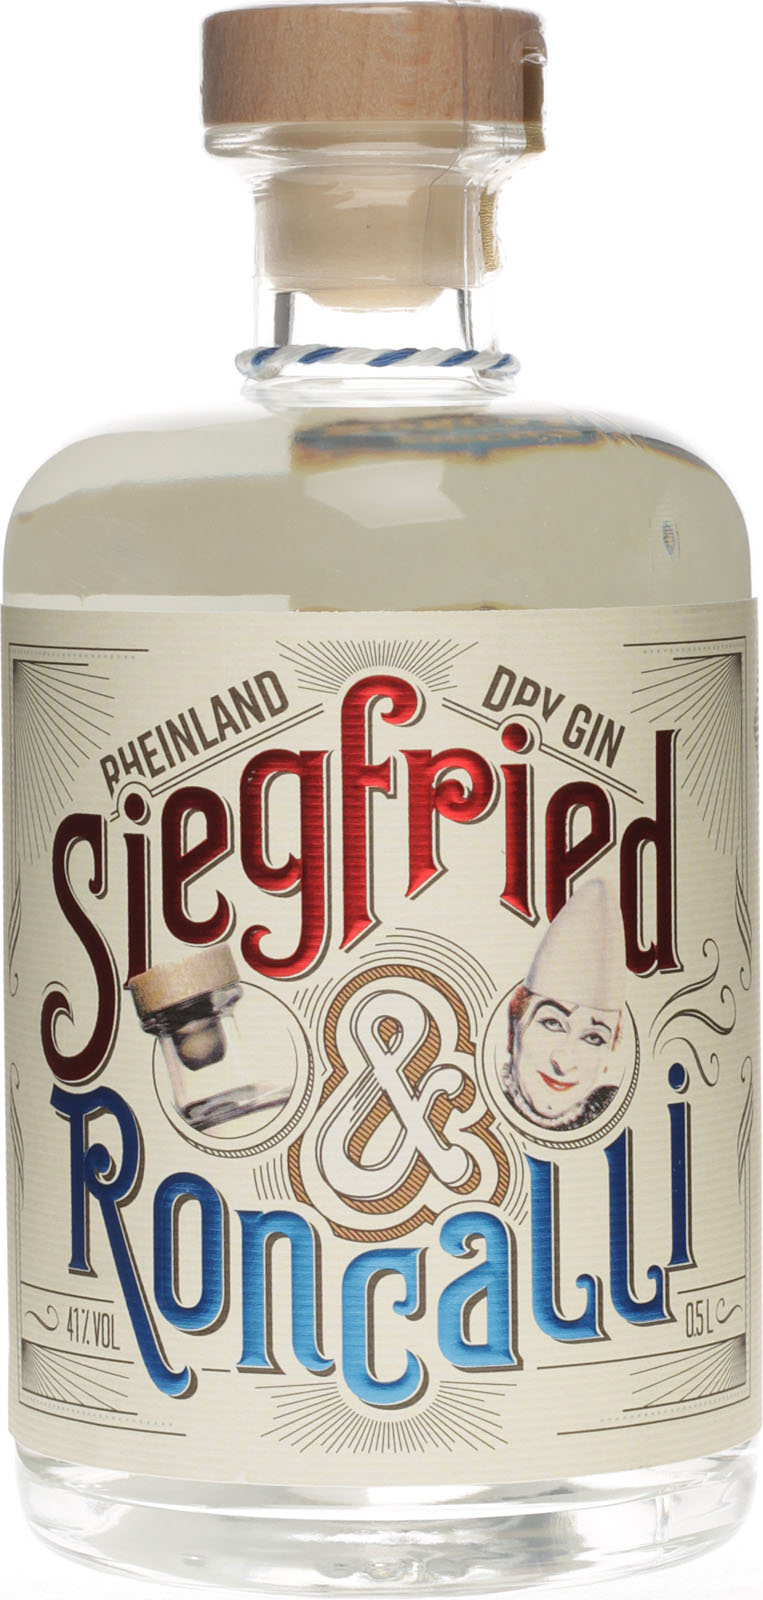 Liter Roncalli Dry Gin Siegfried 0,5 Rheinland Edition